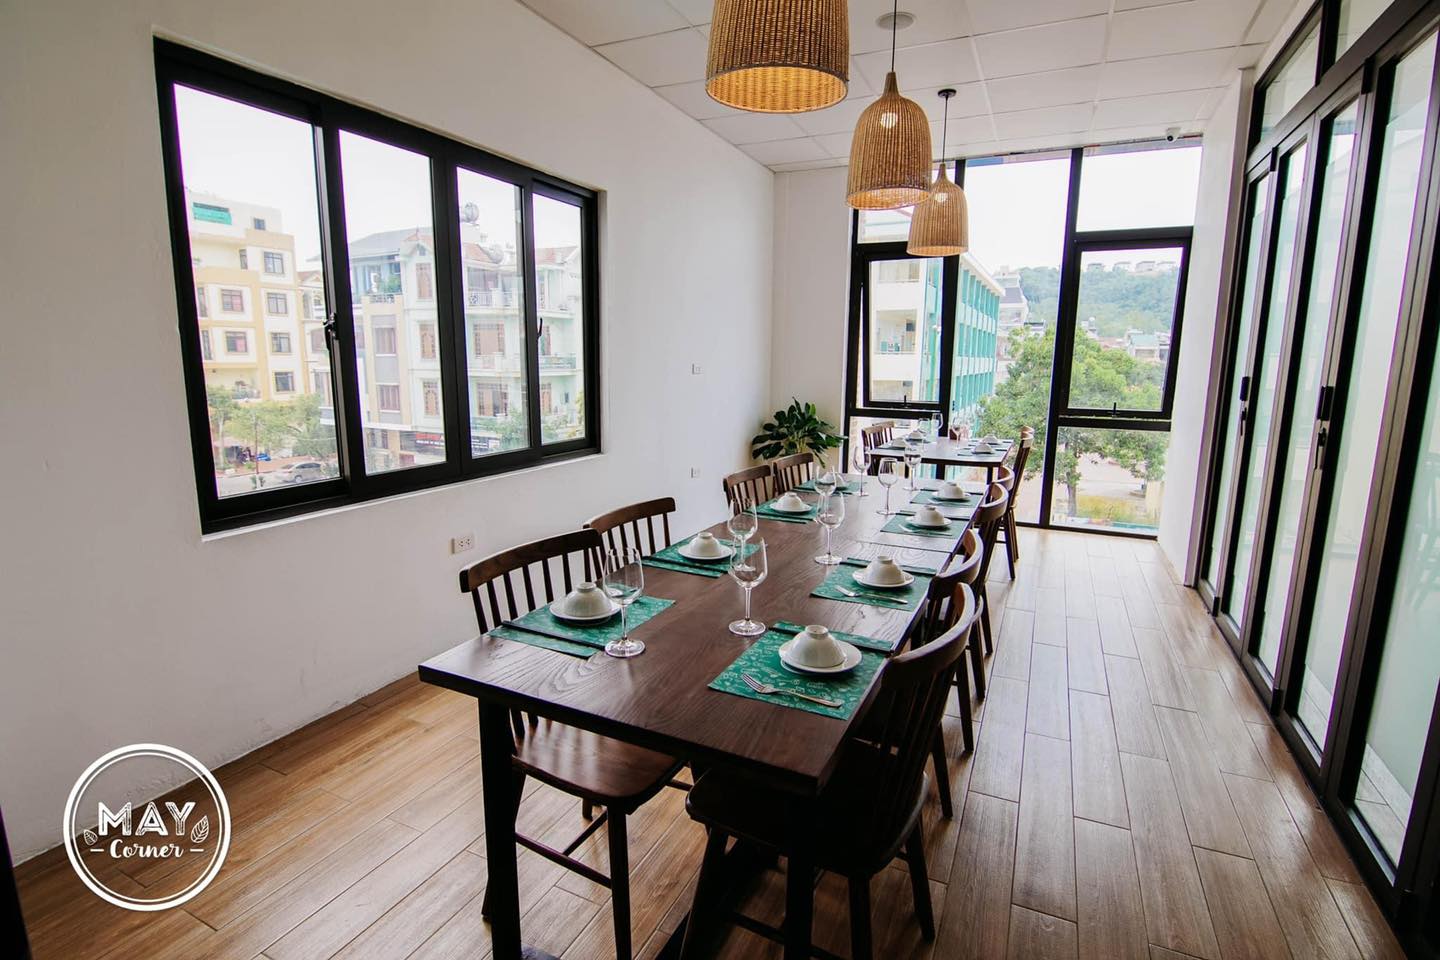 Nhà hàng May Corner Hạ Long - Thiên đường ẩm thực vạn người mê 6